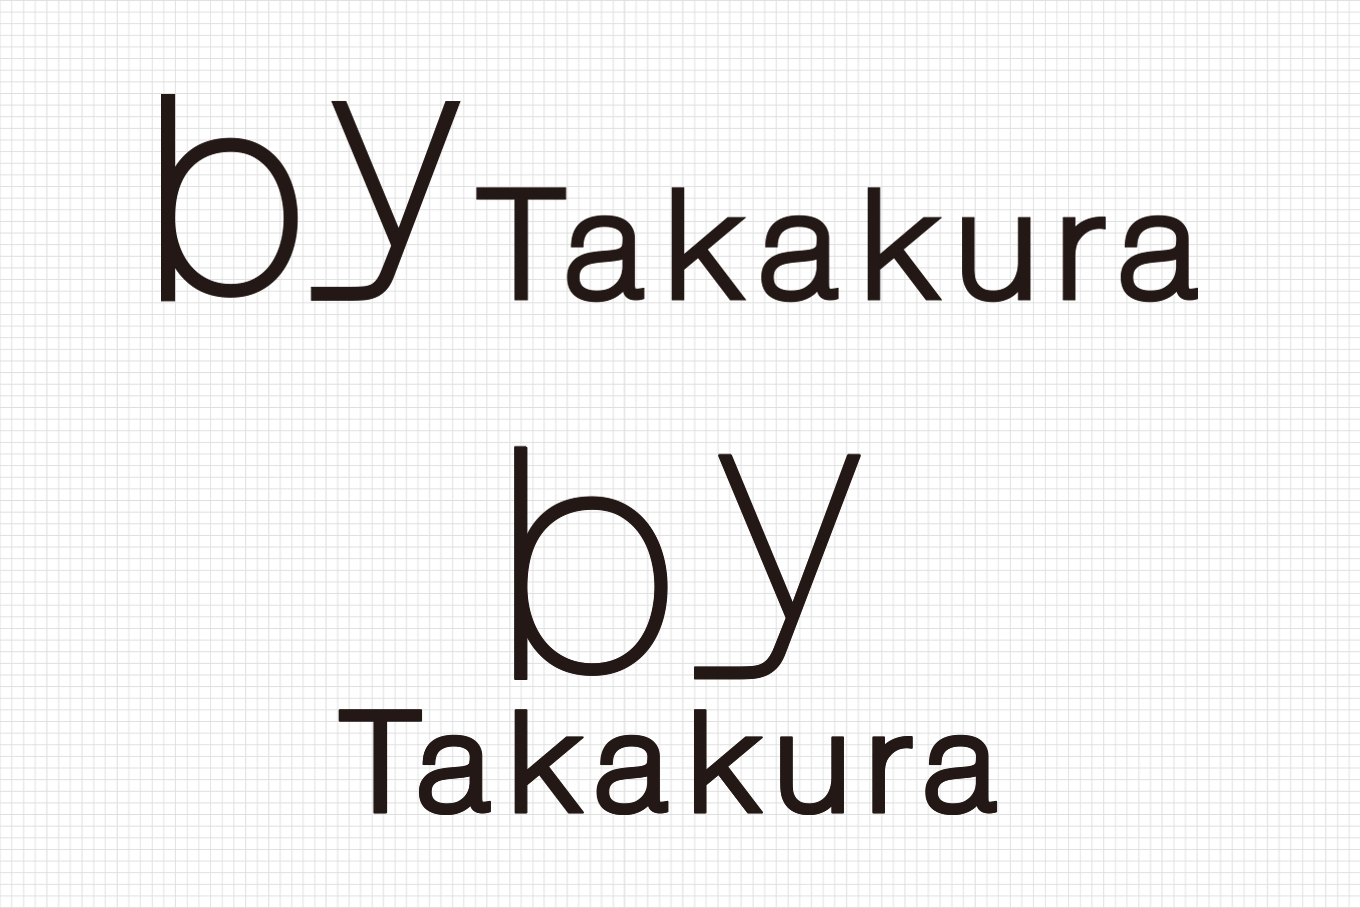 bytakakura_logo_01